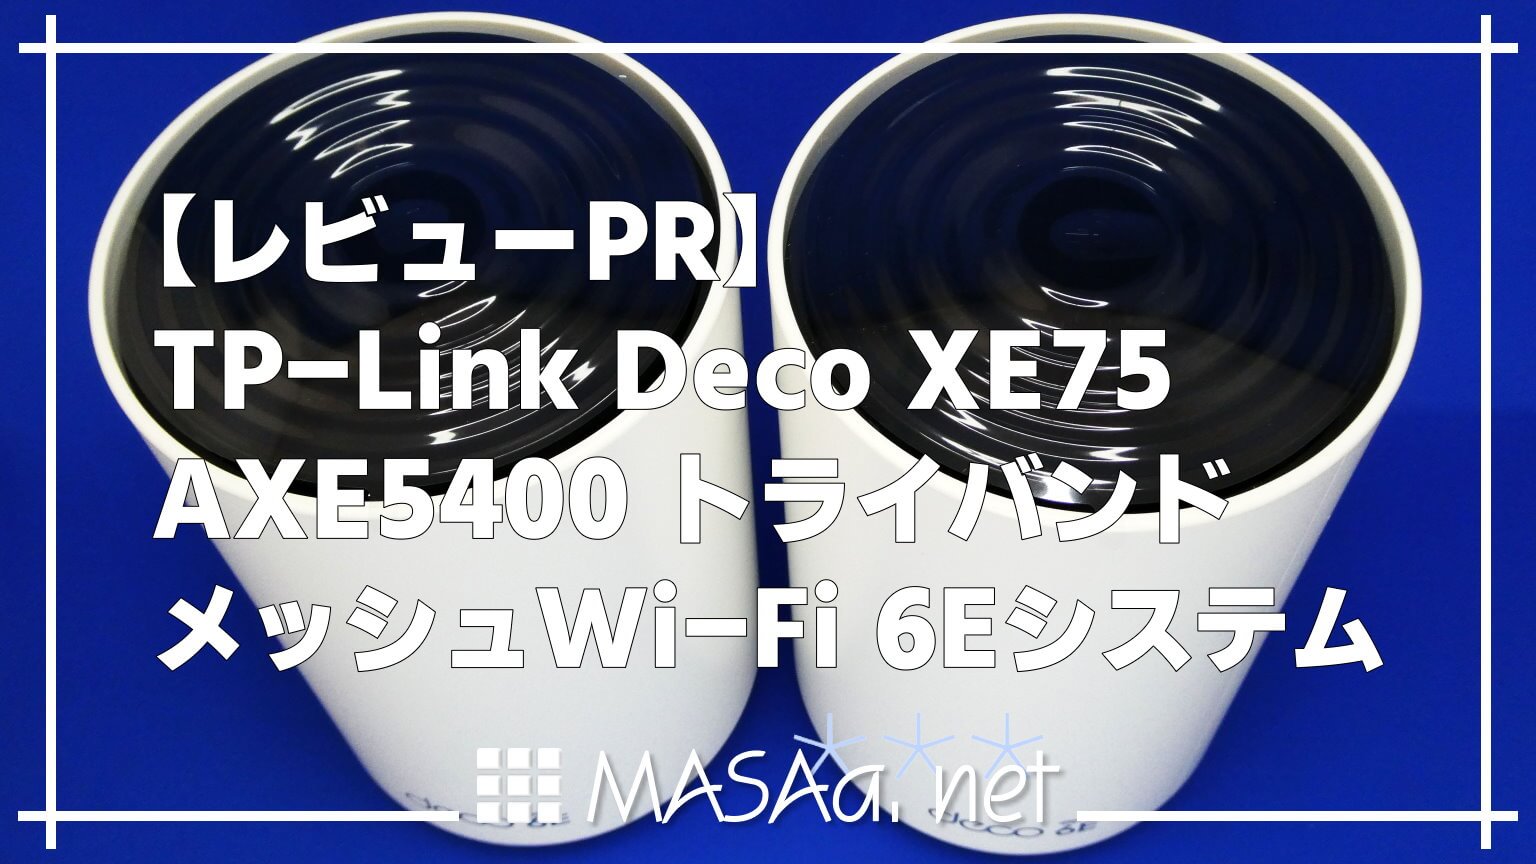 レビューPR】TP-Link Deco XE75 AXE5400 トライバンド メッシュWi-Fi